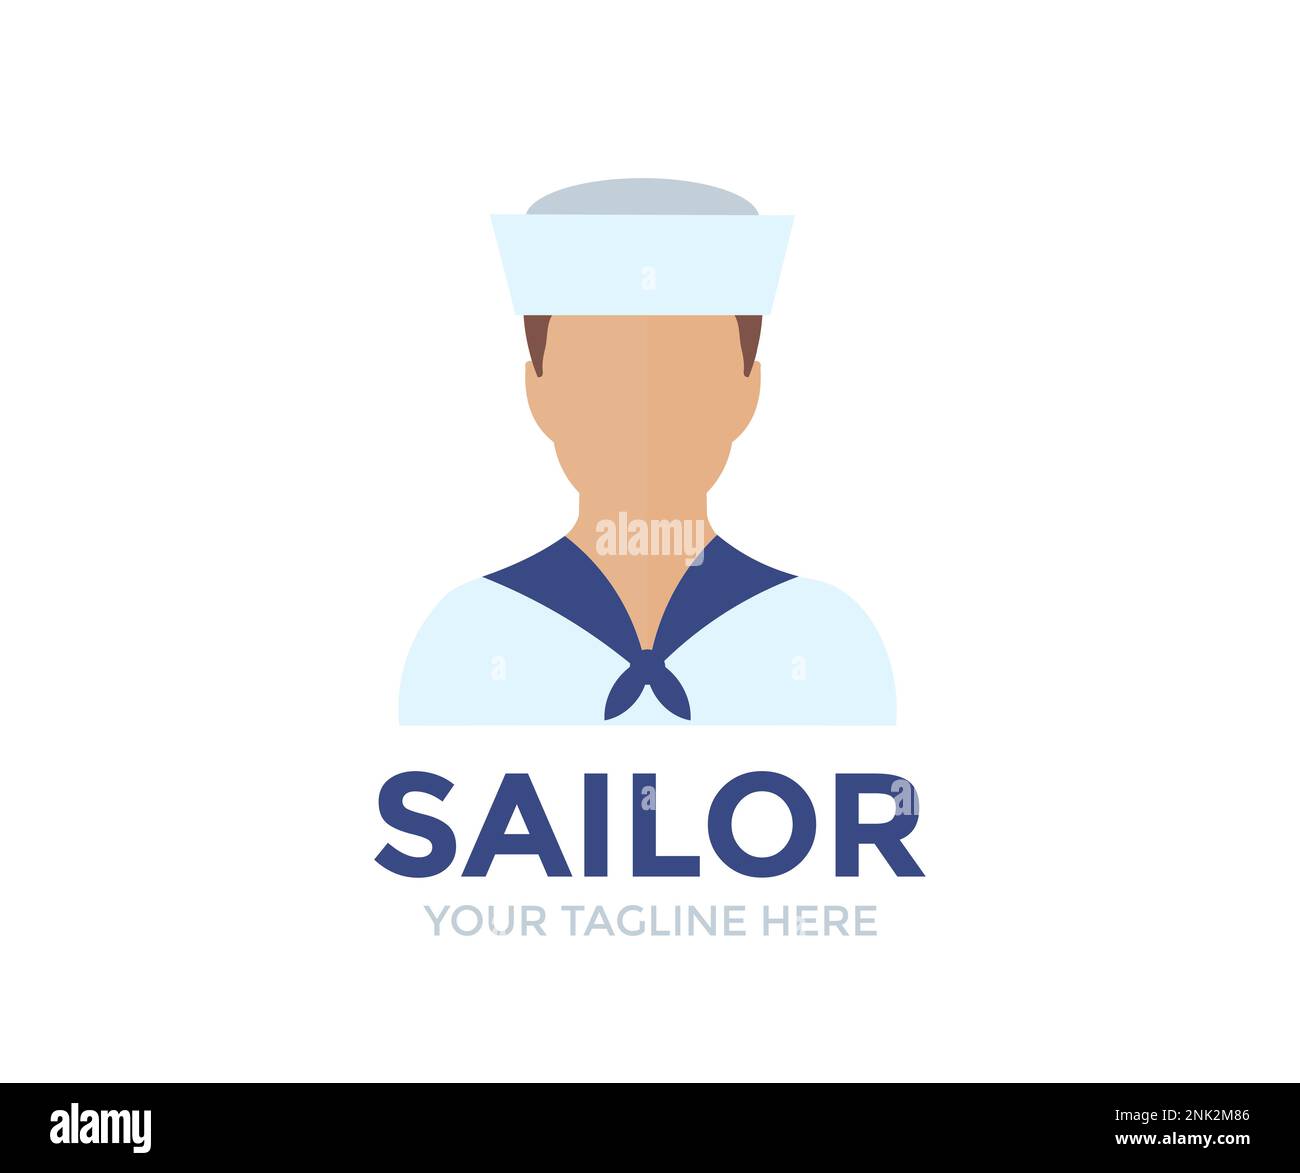 Professionelles Sailor man Logo. Personenprofil, Avatarsymbol, Symbol für männliche Personen. Seemann. Männlicher professioneller Seemann. Stock Vektor